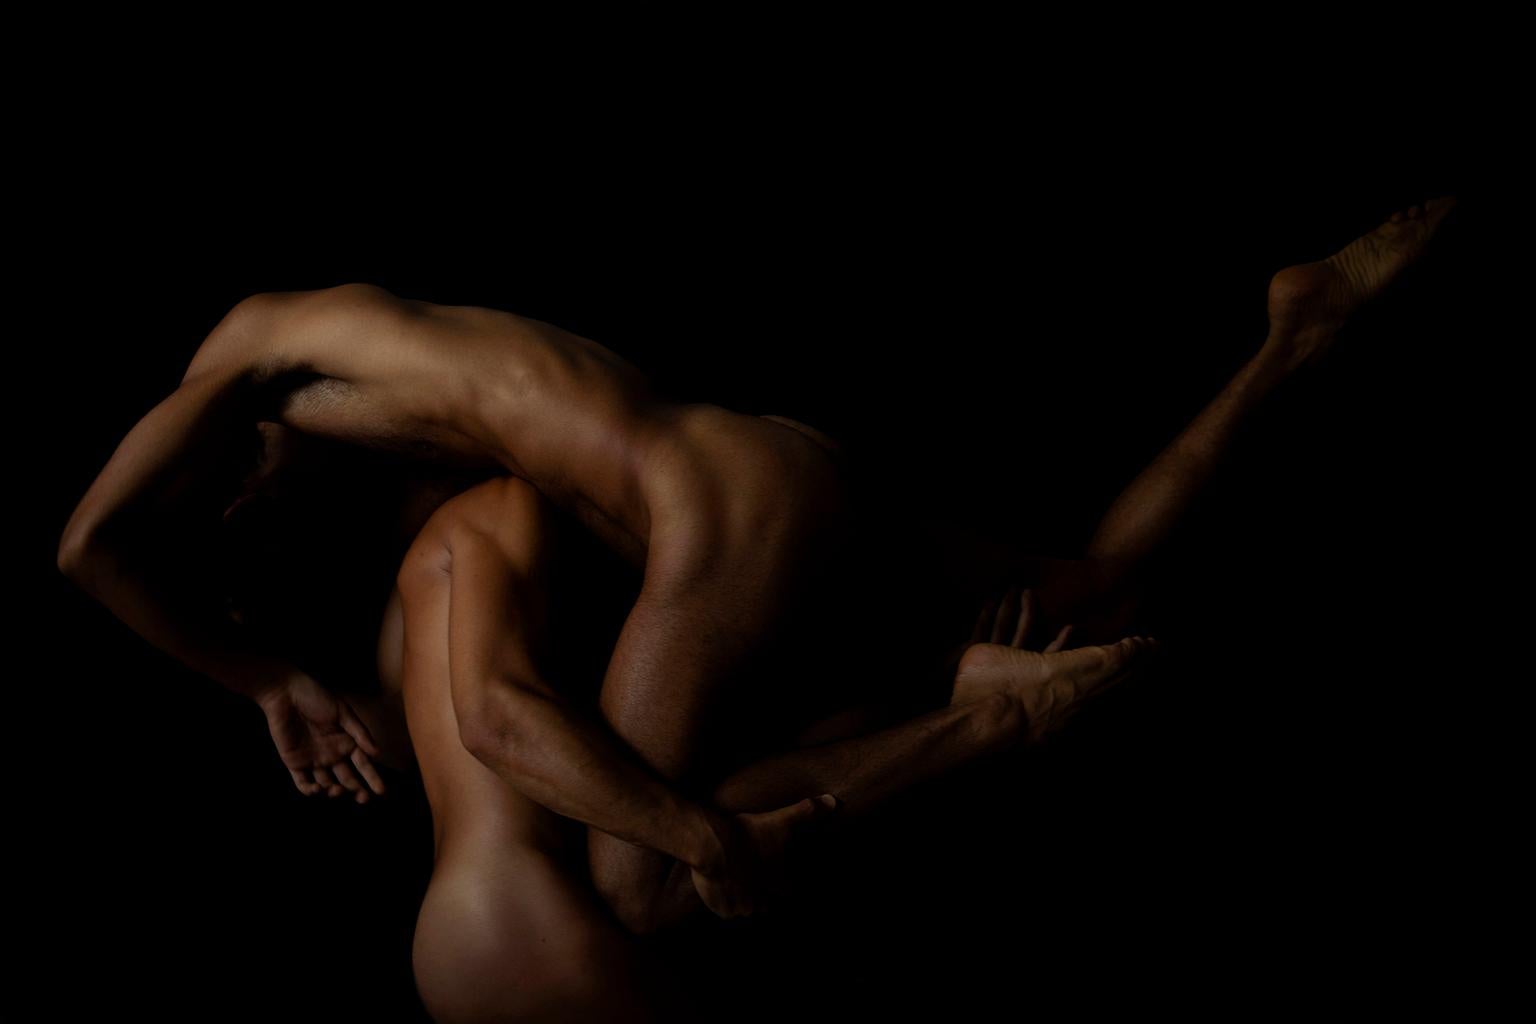 Nude Photograph Ricky Cohete - La reddition. Nus. Photographie en couleur à tirage limité